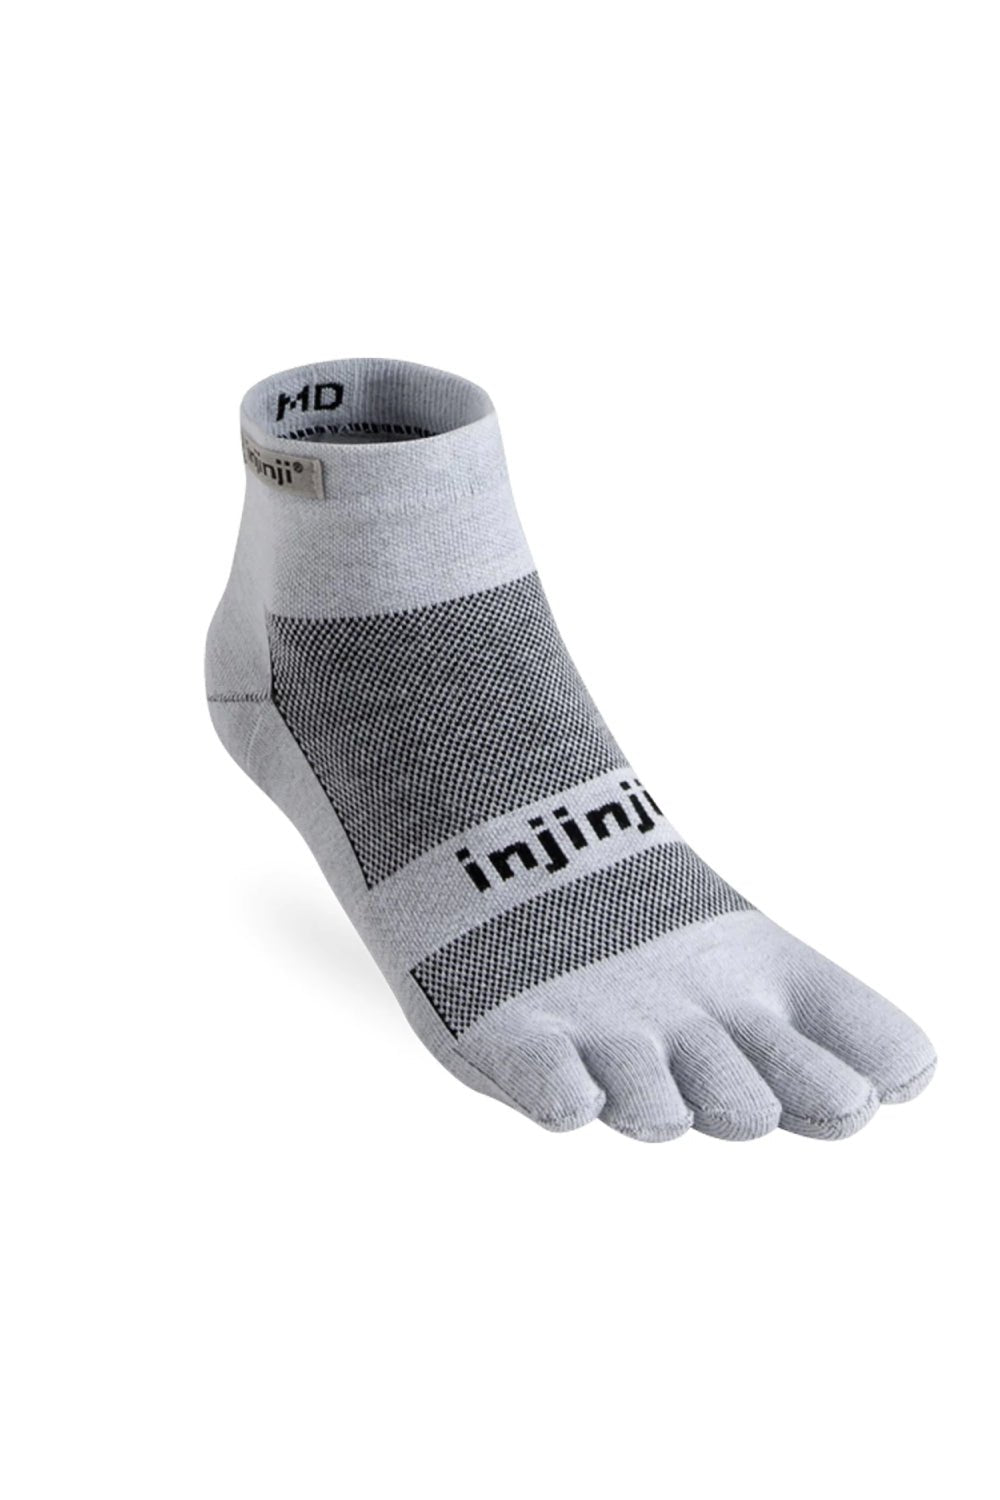 Injinji Run Lightweight Mini-Crew Toe Socks - Grey | Coffee Outdoors